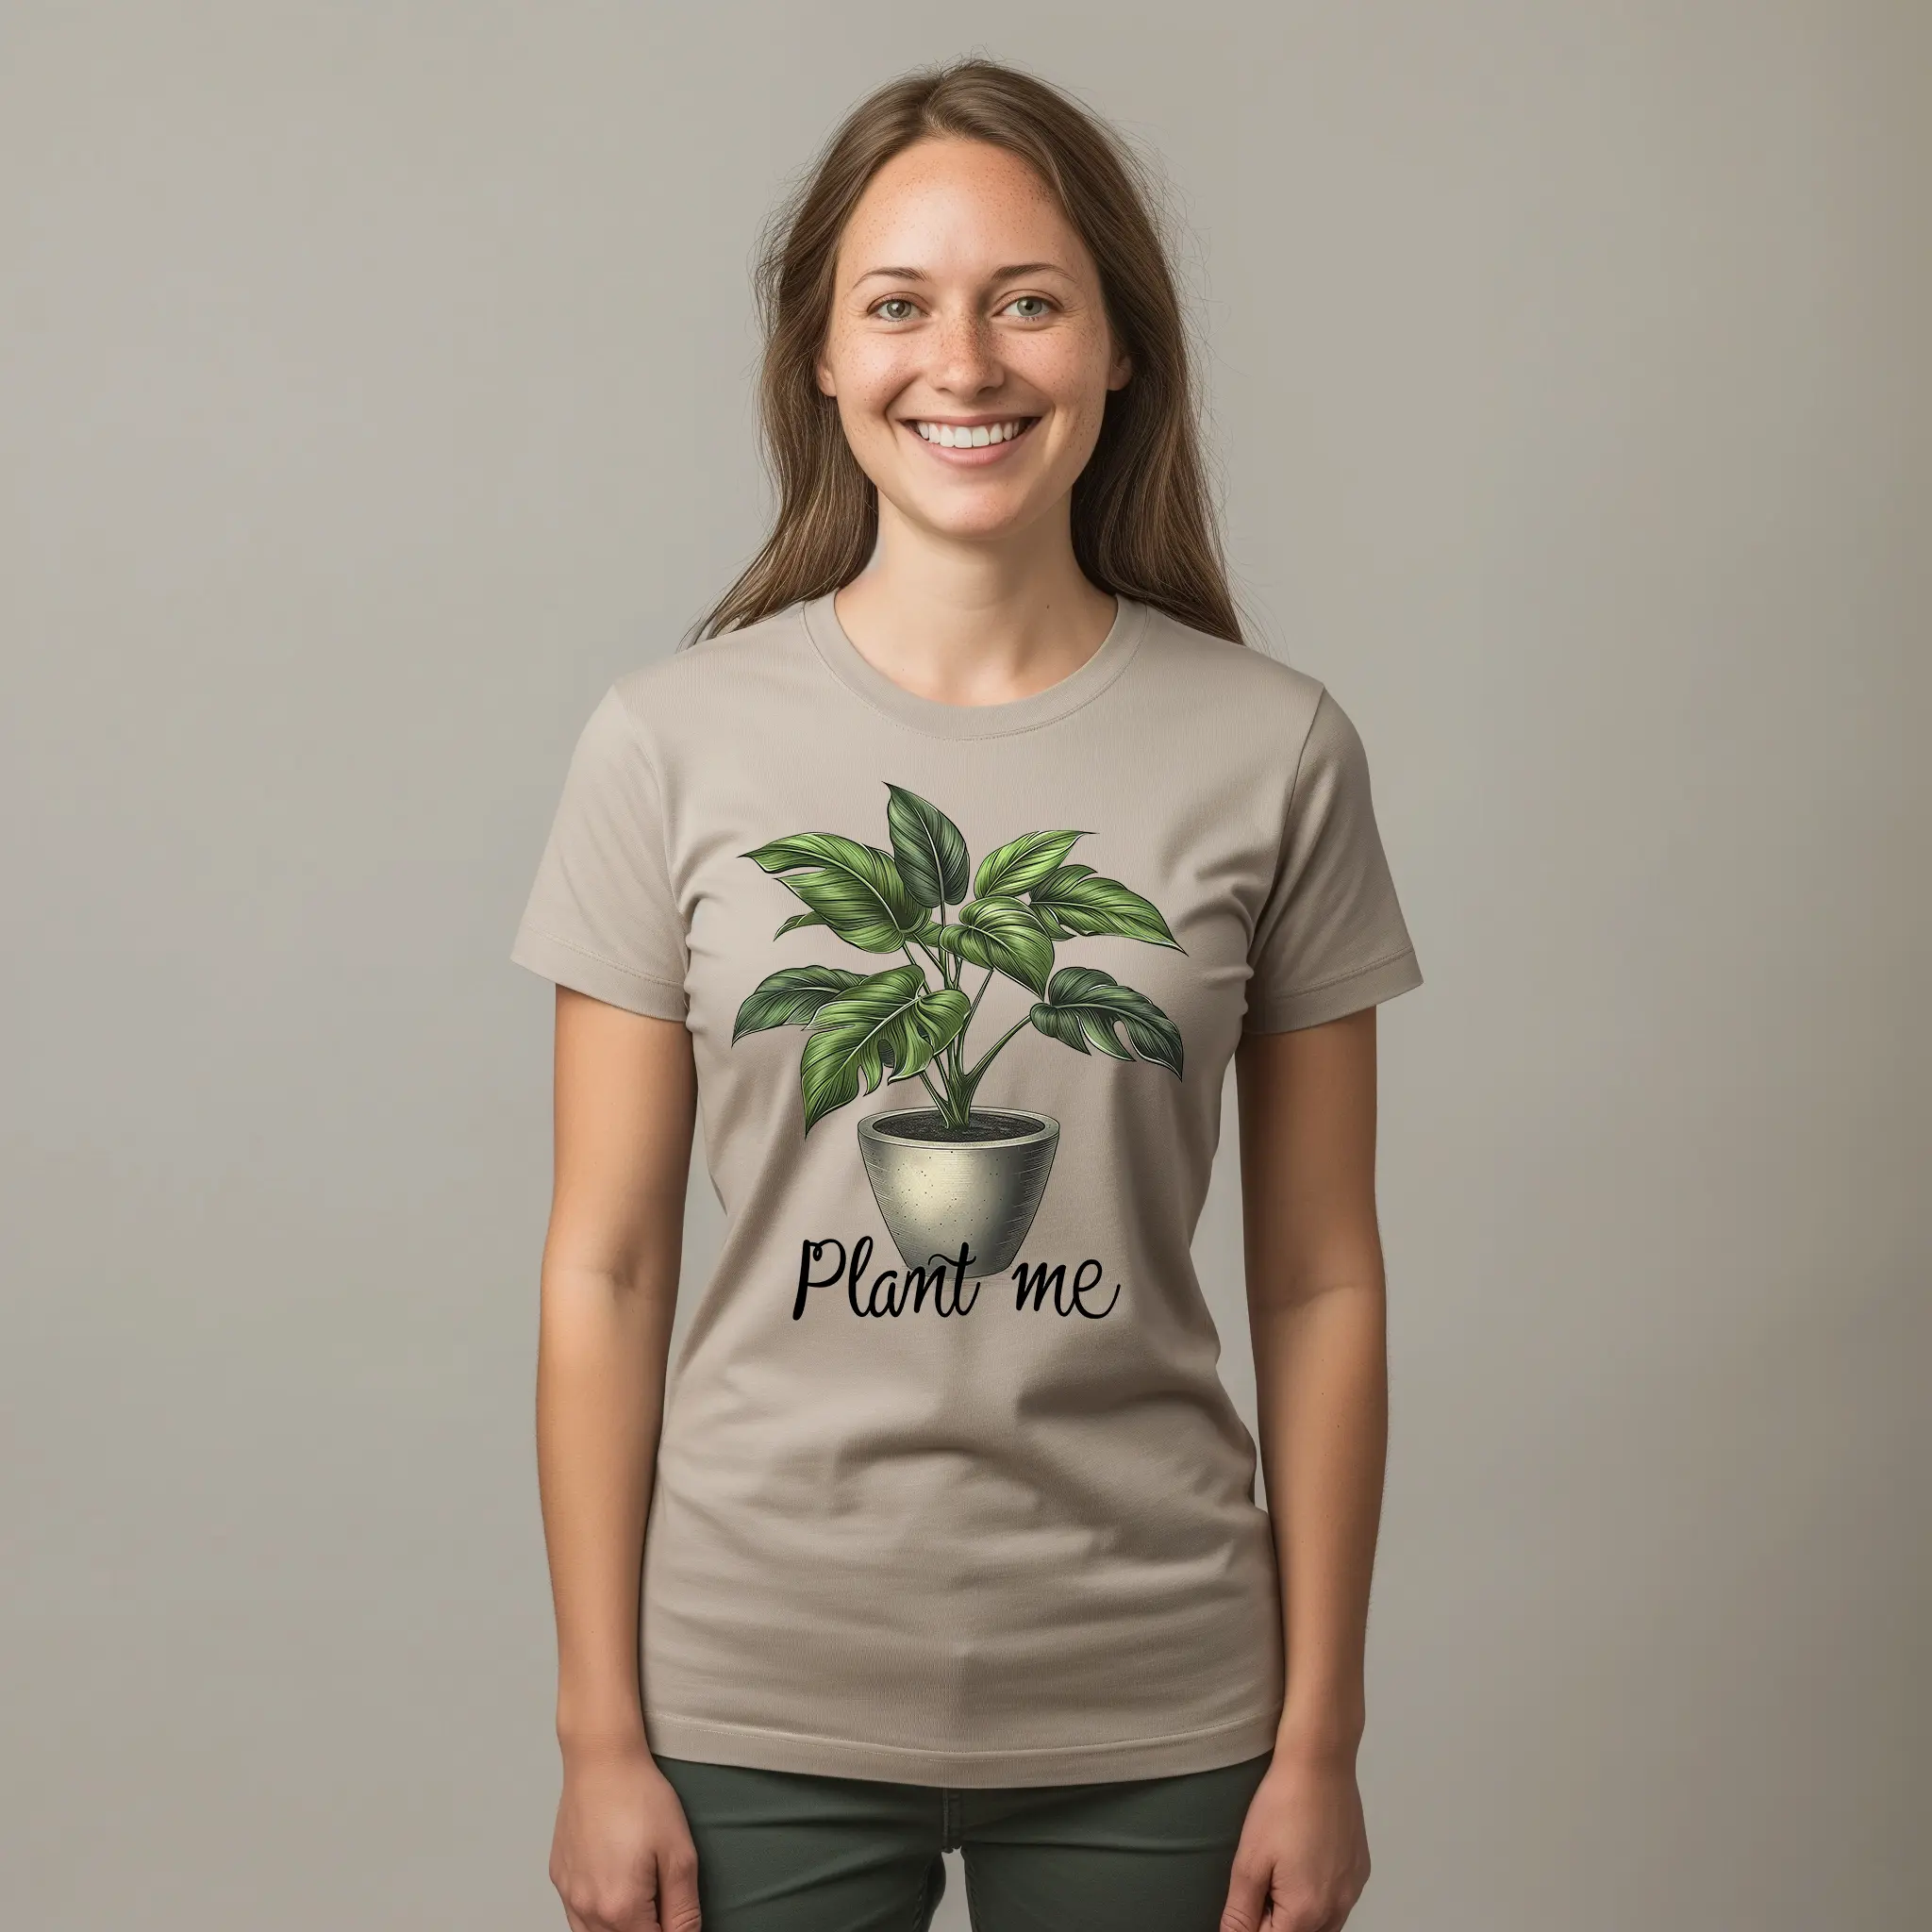 Tričko s potlačou PLANT ME pre milovníkov kvetov, dievča v tričku s nažehlovačkou